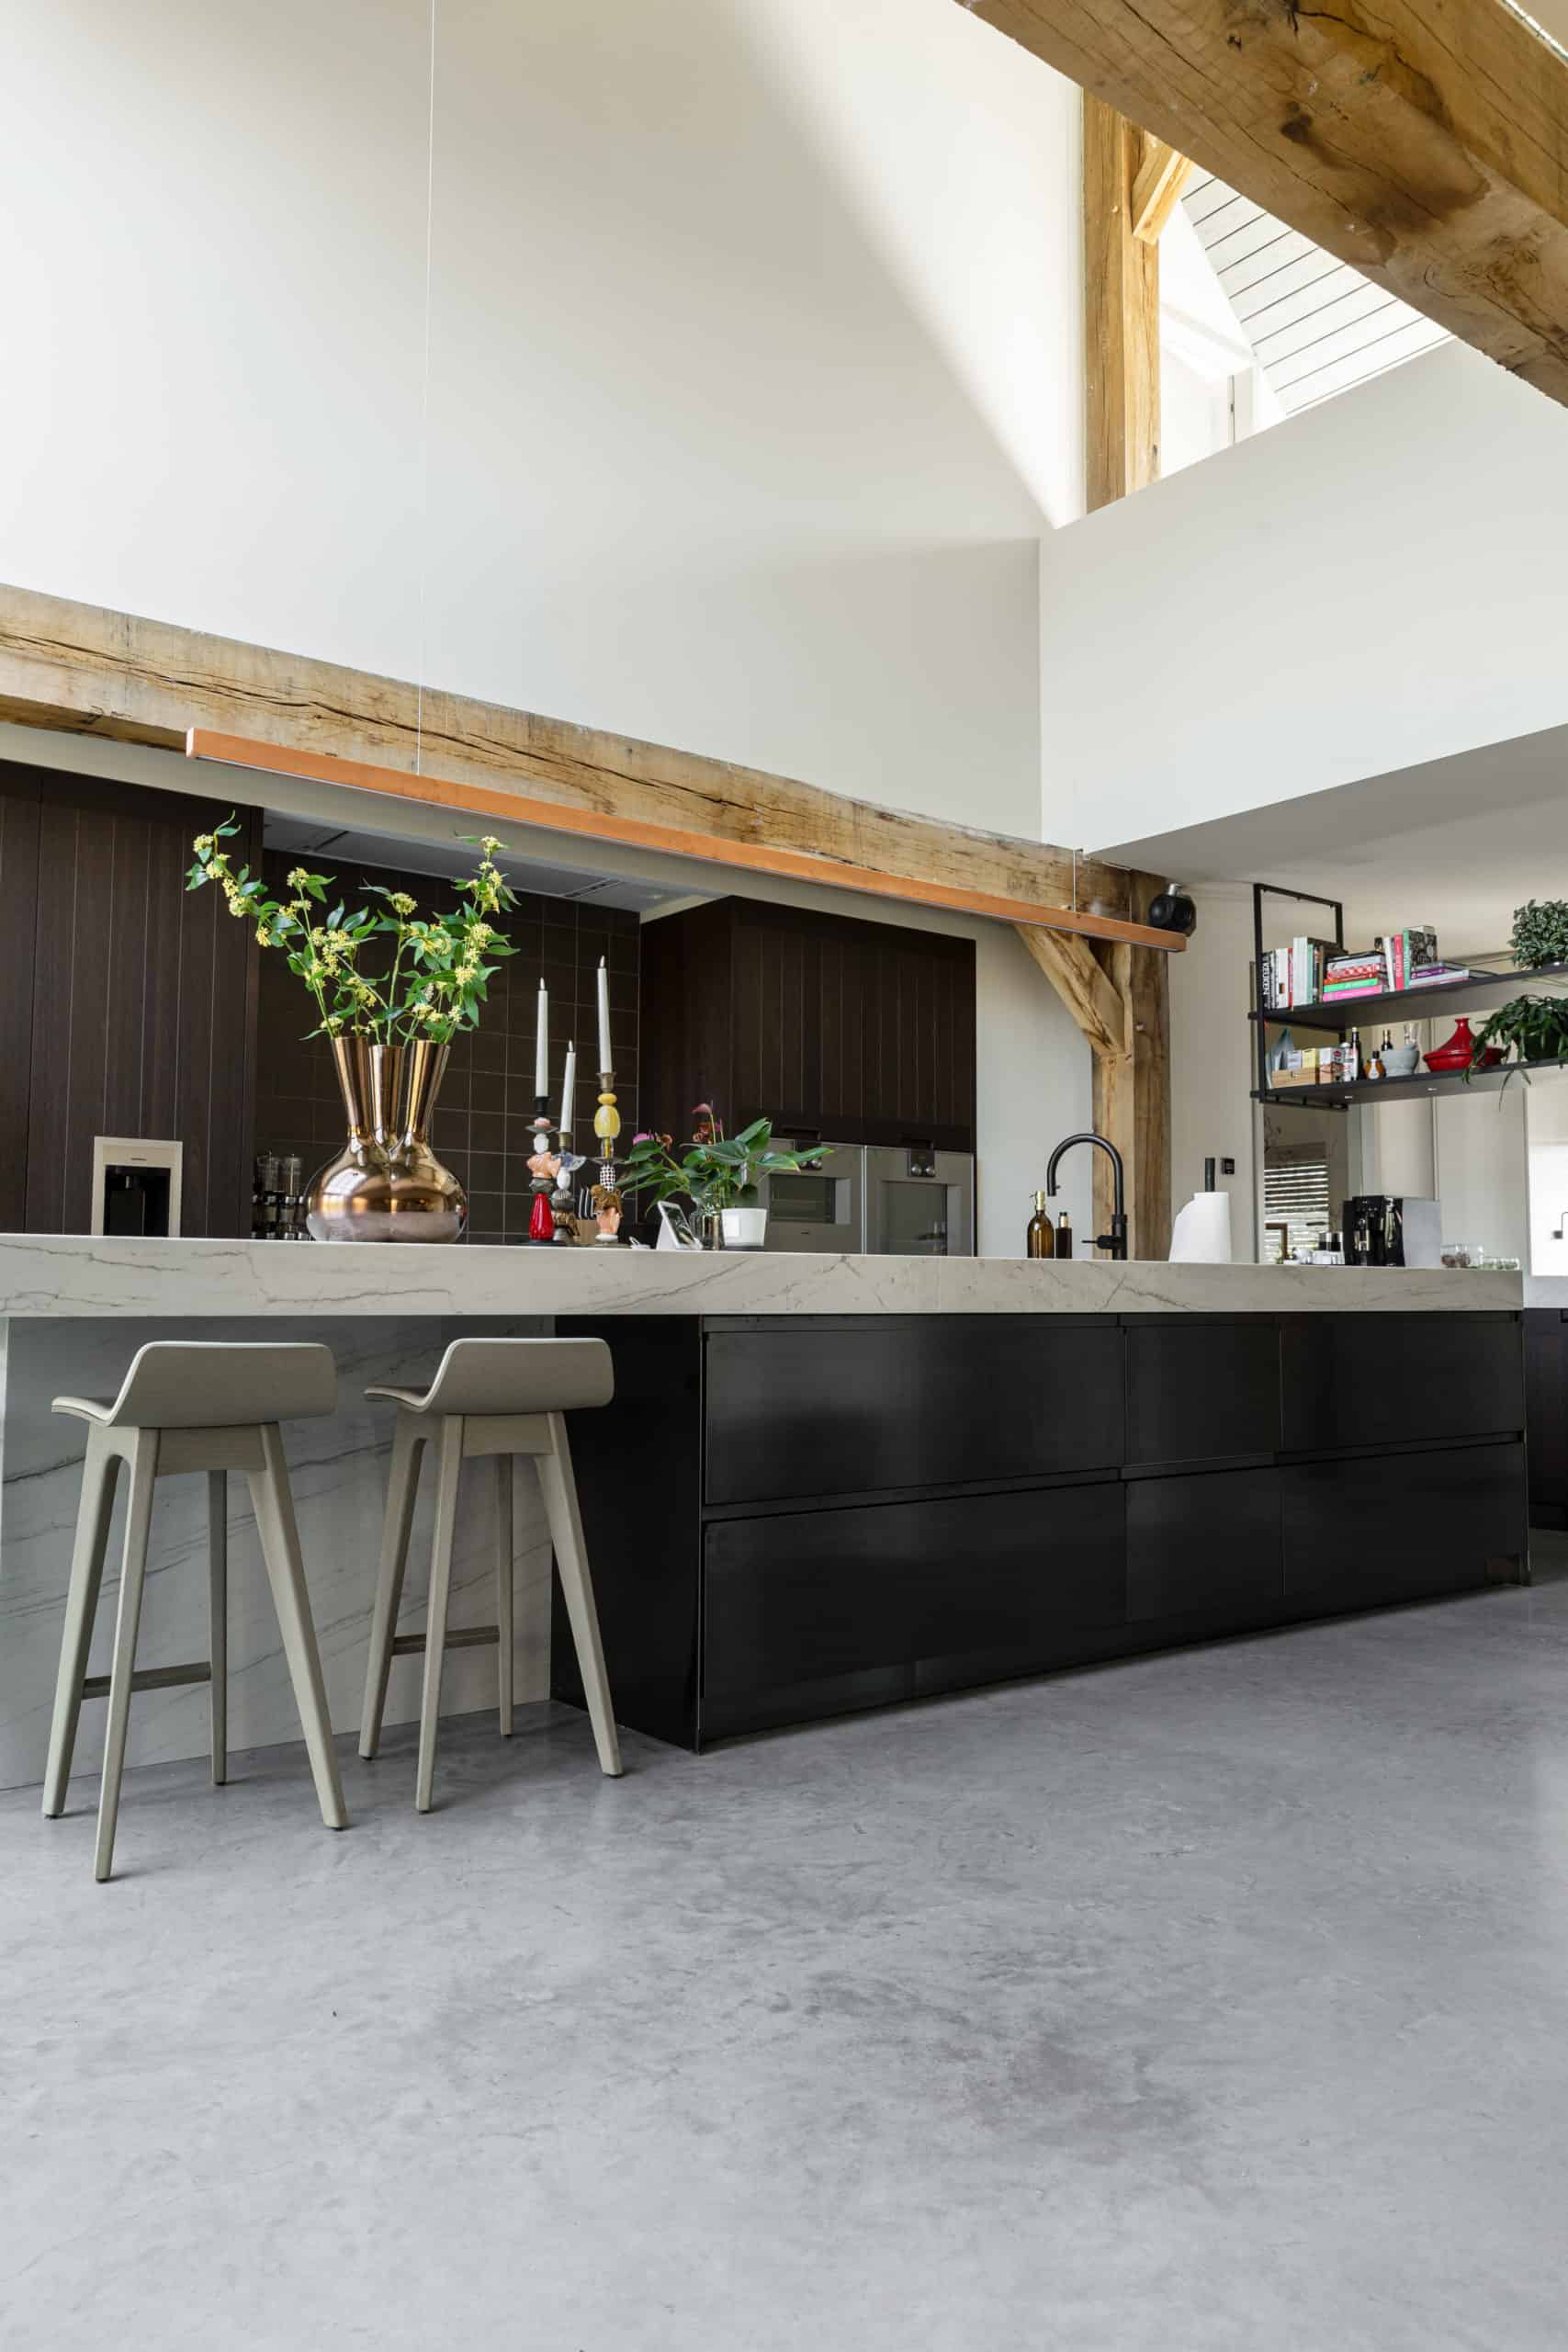 Woning in Oss met een keukeneiland met een marmeren blad en een donkere onderkant gecombineerd met een gevlinderde betonvloer